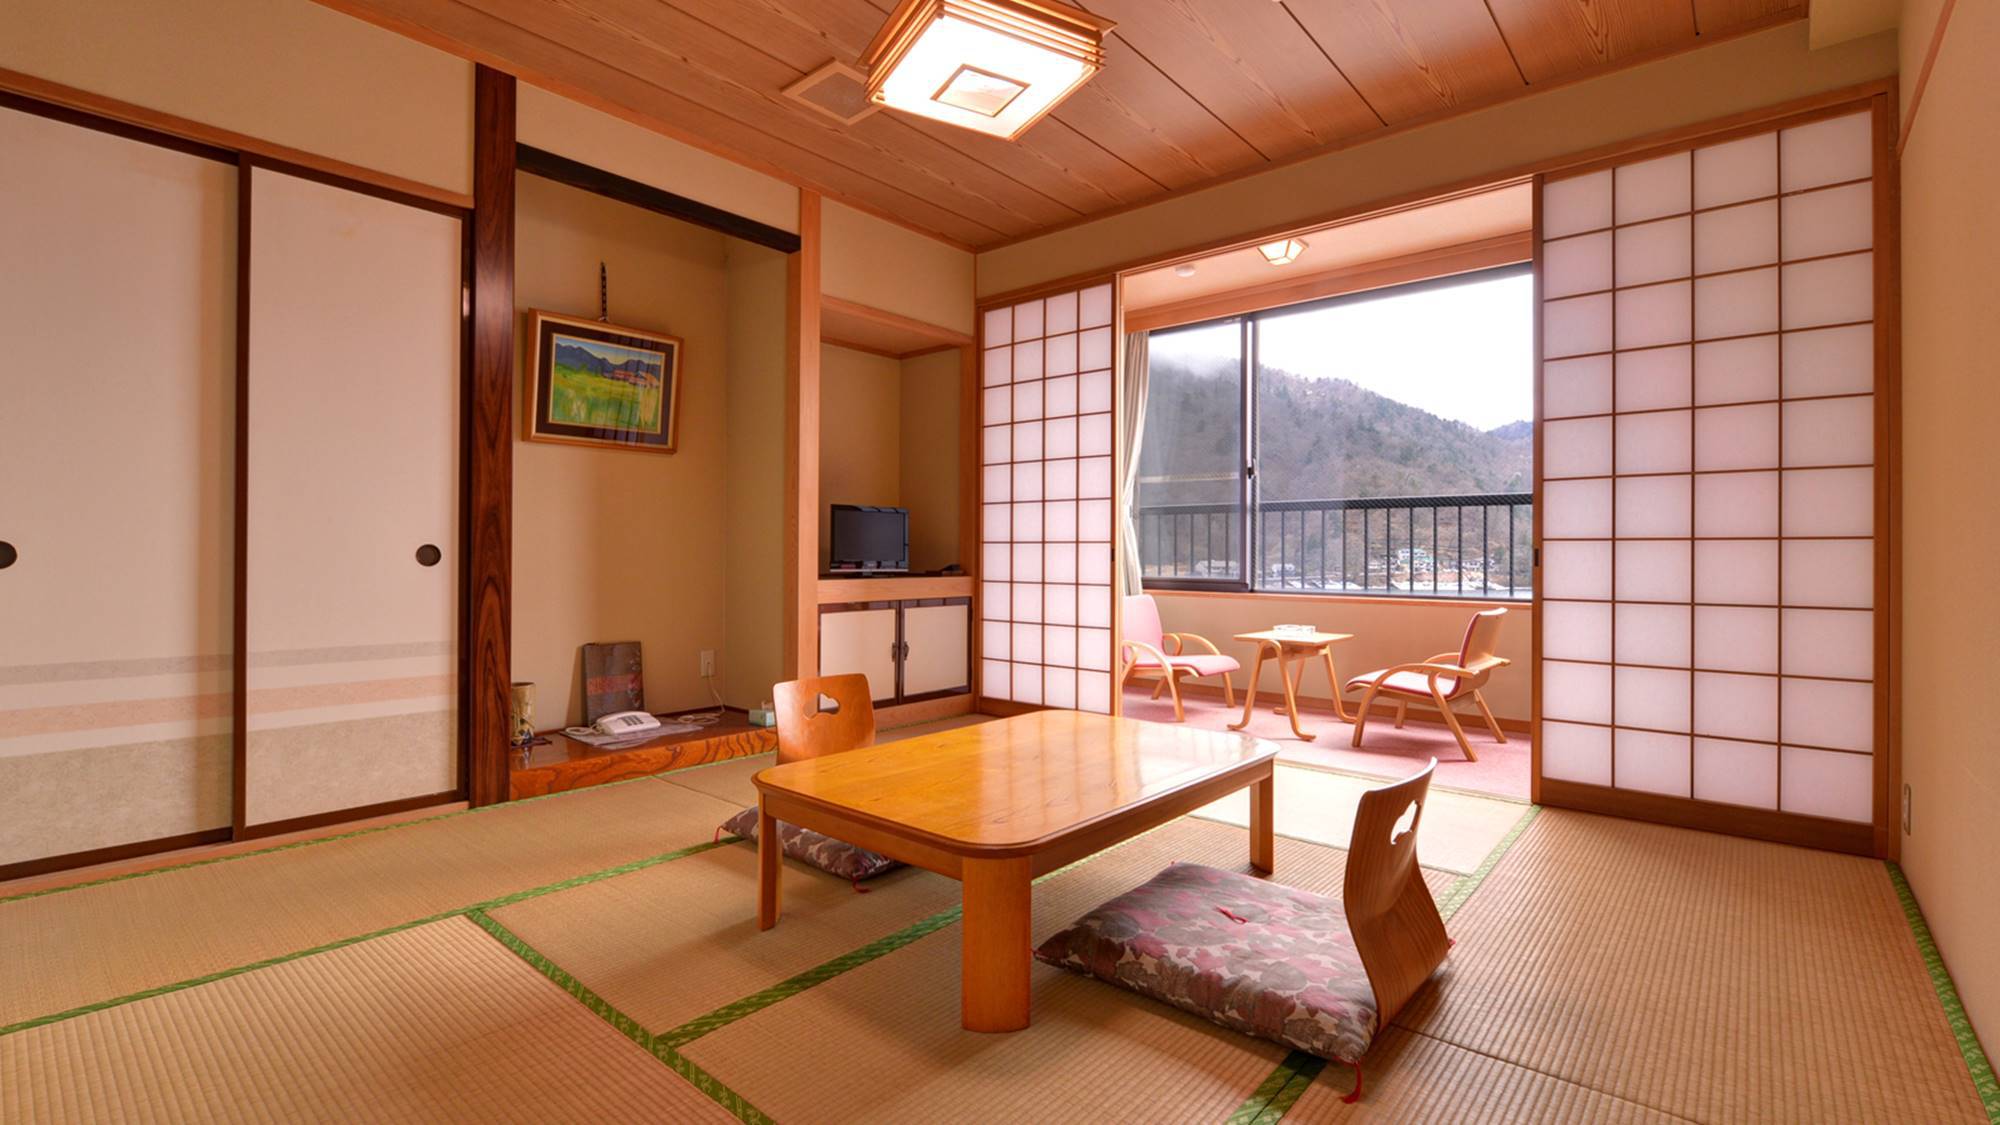 *新館和室8畳/日本百景「中禅寺湖」を望む部屋。まだから入る心地よい風に癒されて。